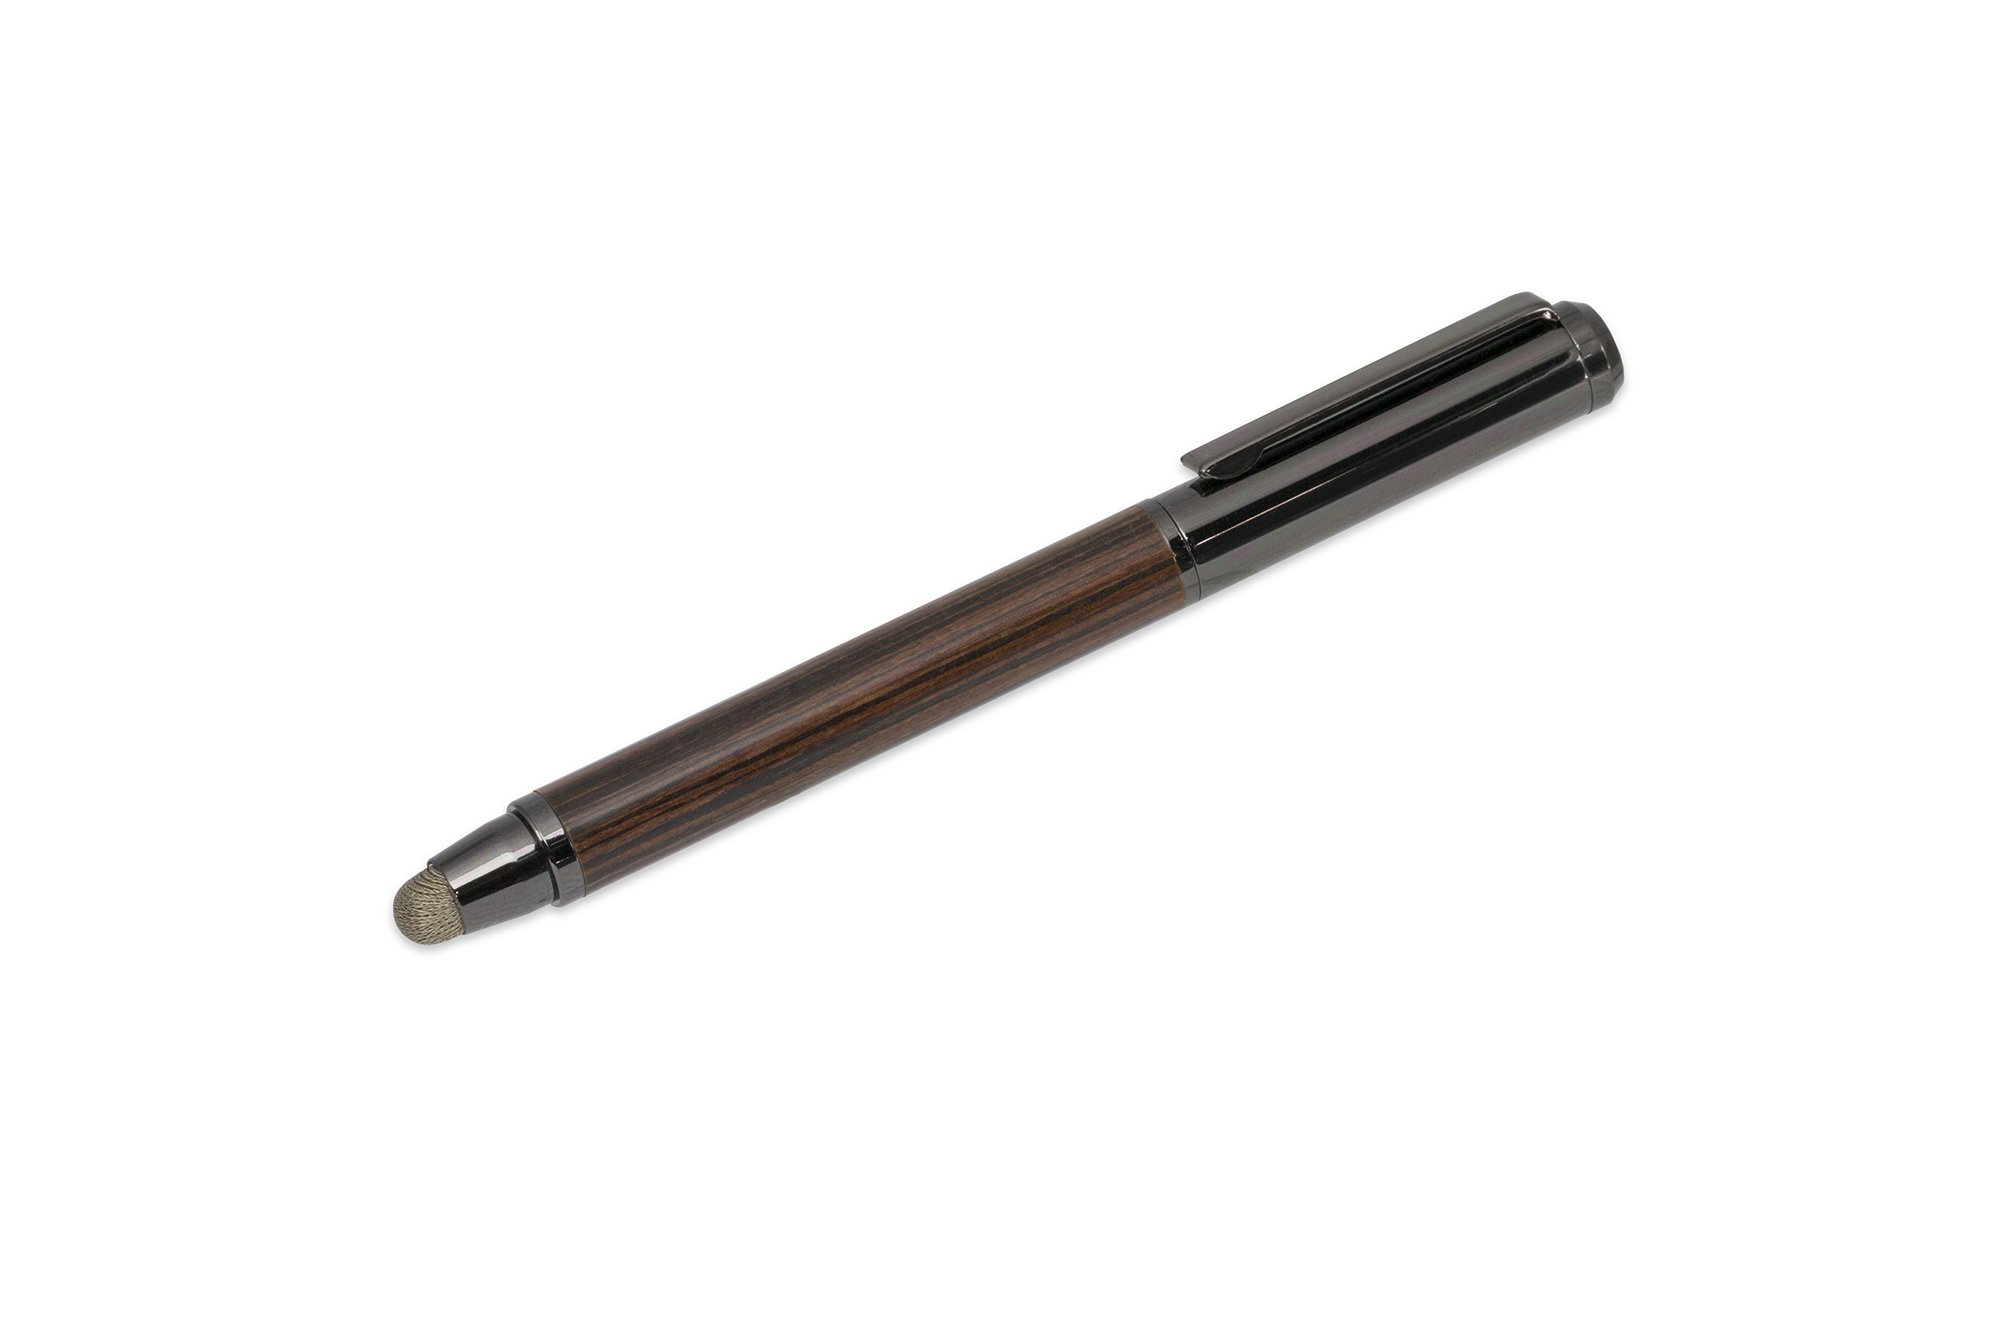 Deff 高級筆記具に引けを取らないタッチペンTouch Pen with Ballpoint Pen DTP-B20**** (ローズウッド/ブラックボディ)